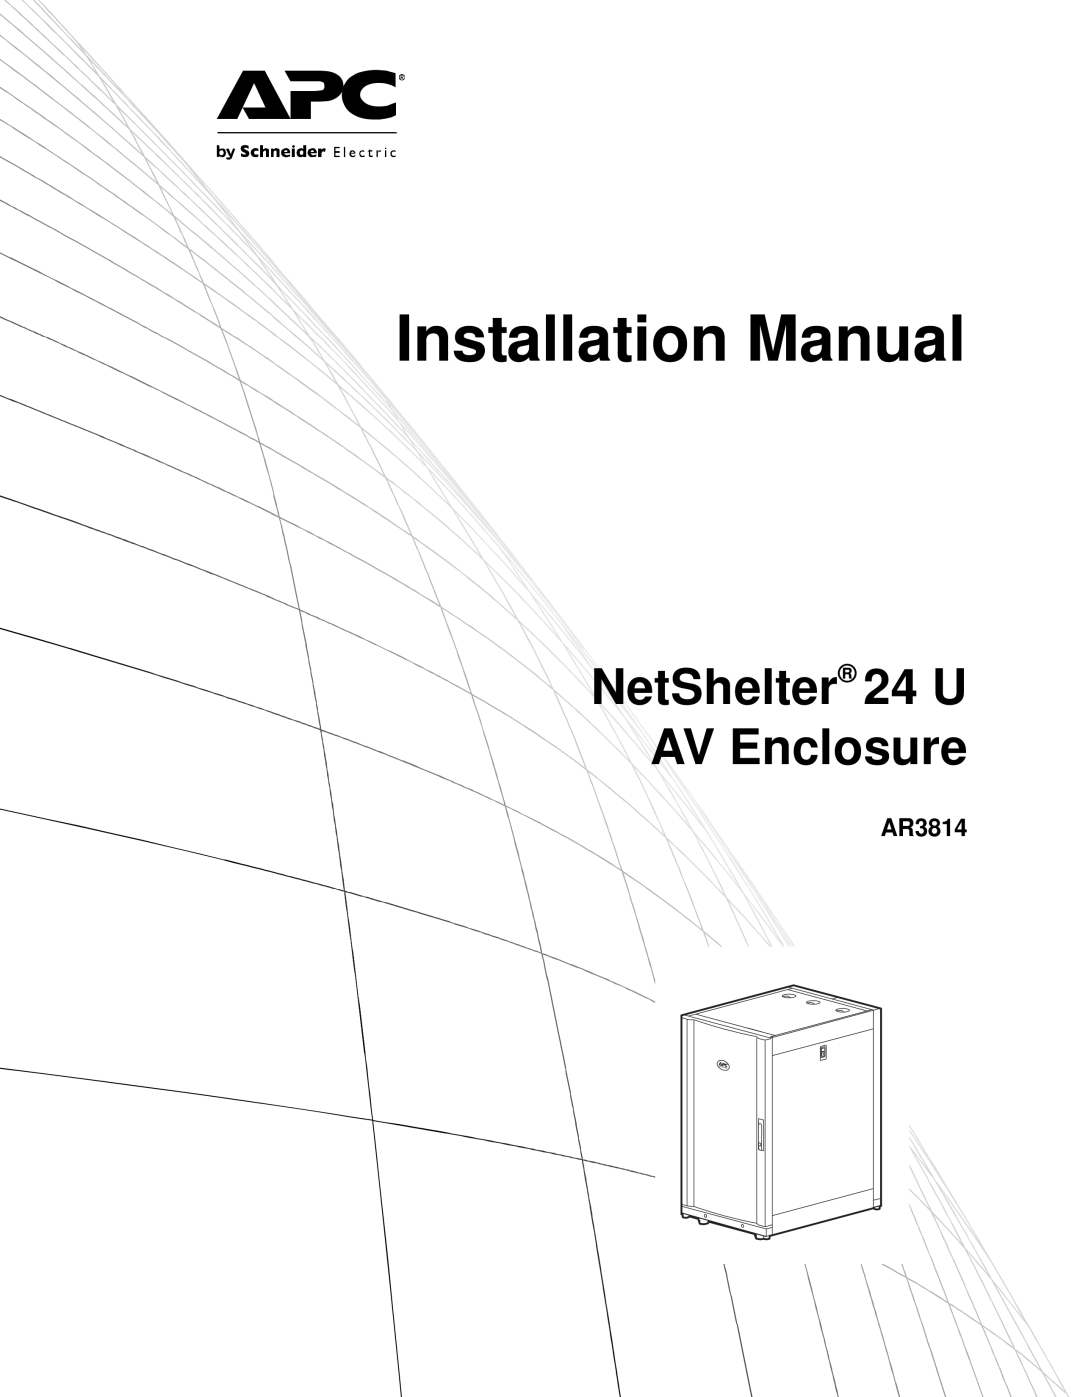 APC AR3814 installation manual Installation Manual, NetShelter 24 U AV Enclosure 